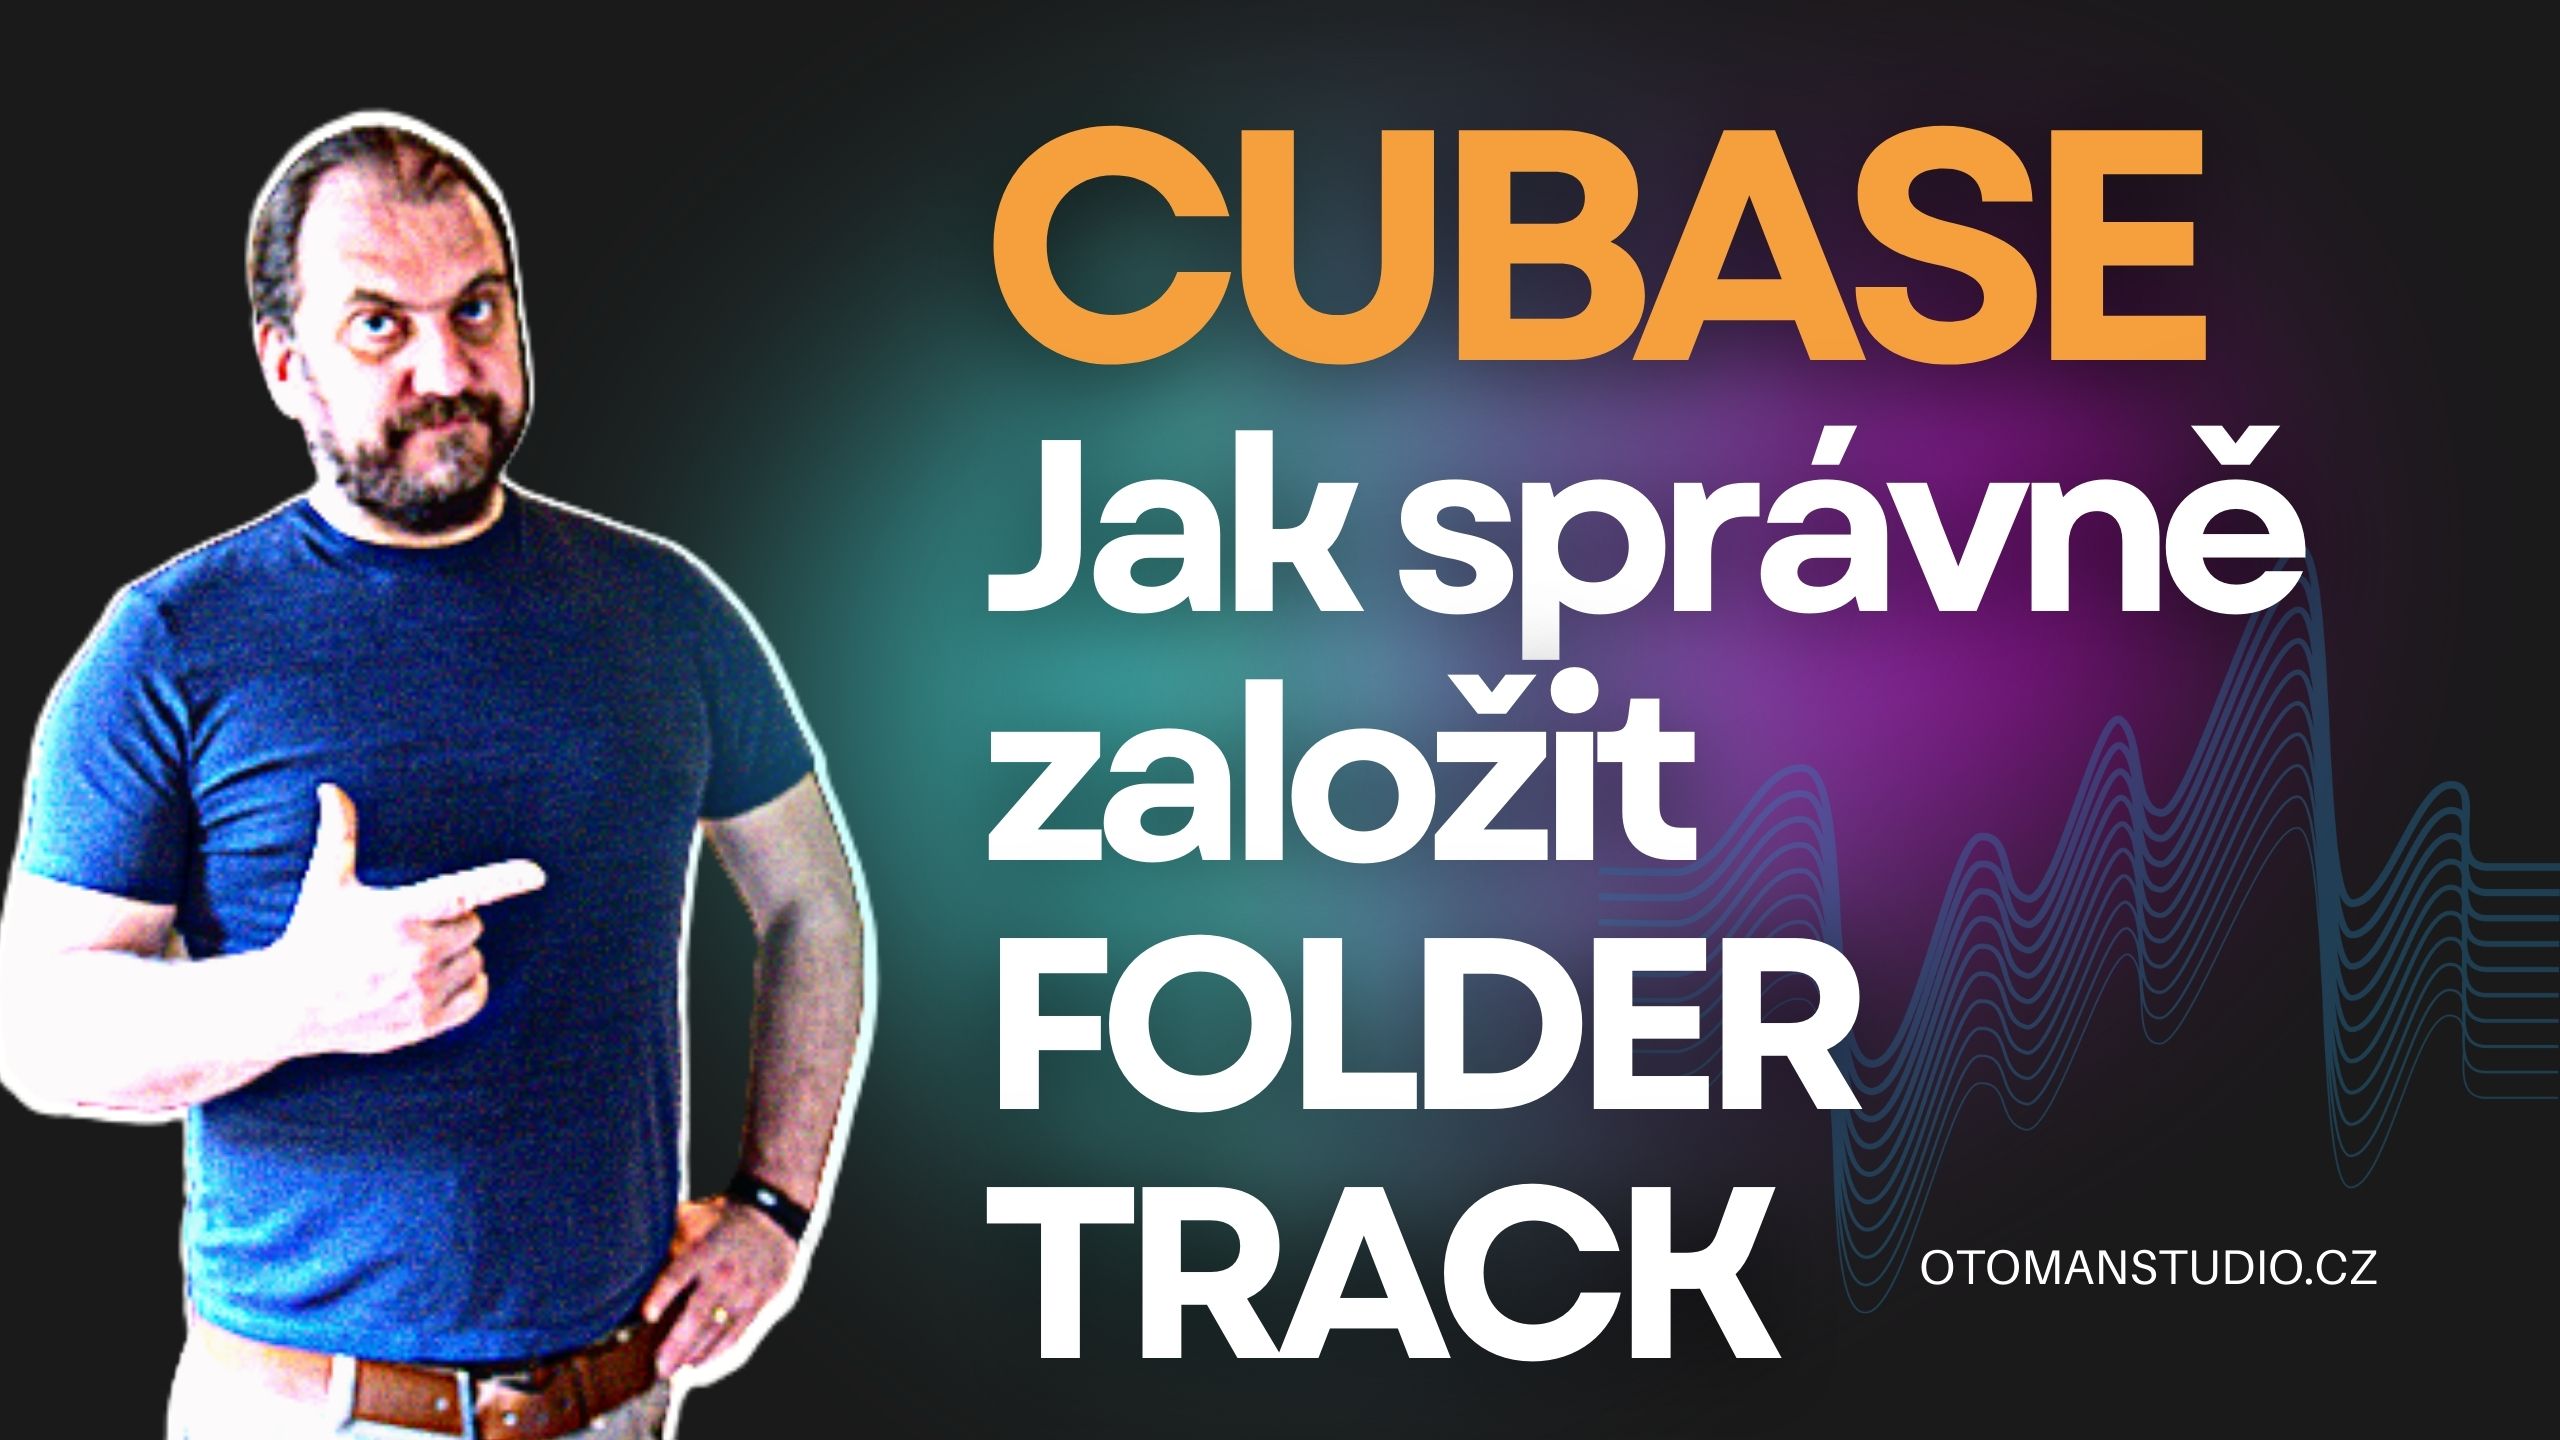 Cubase – Jak správně založit Folder Track